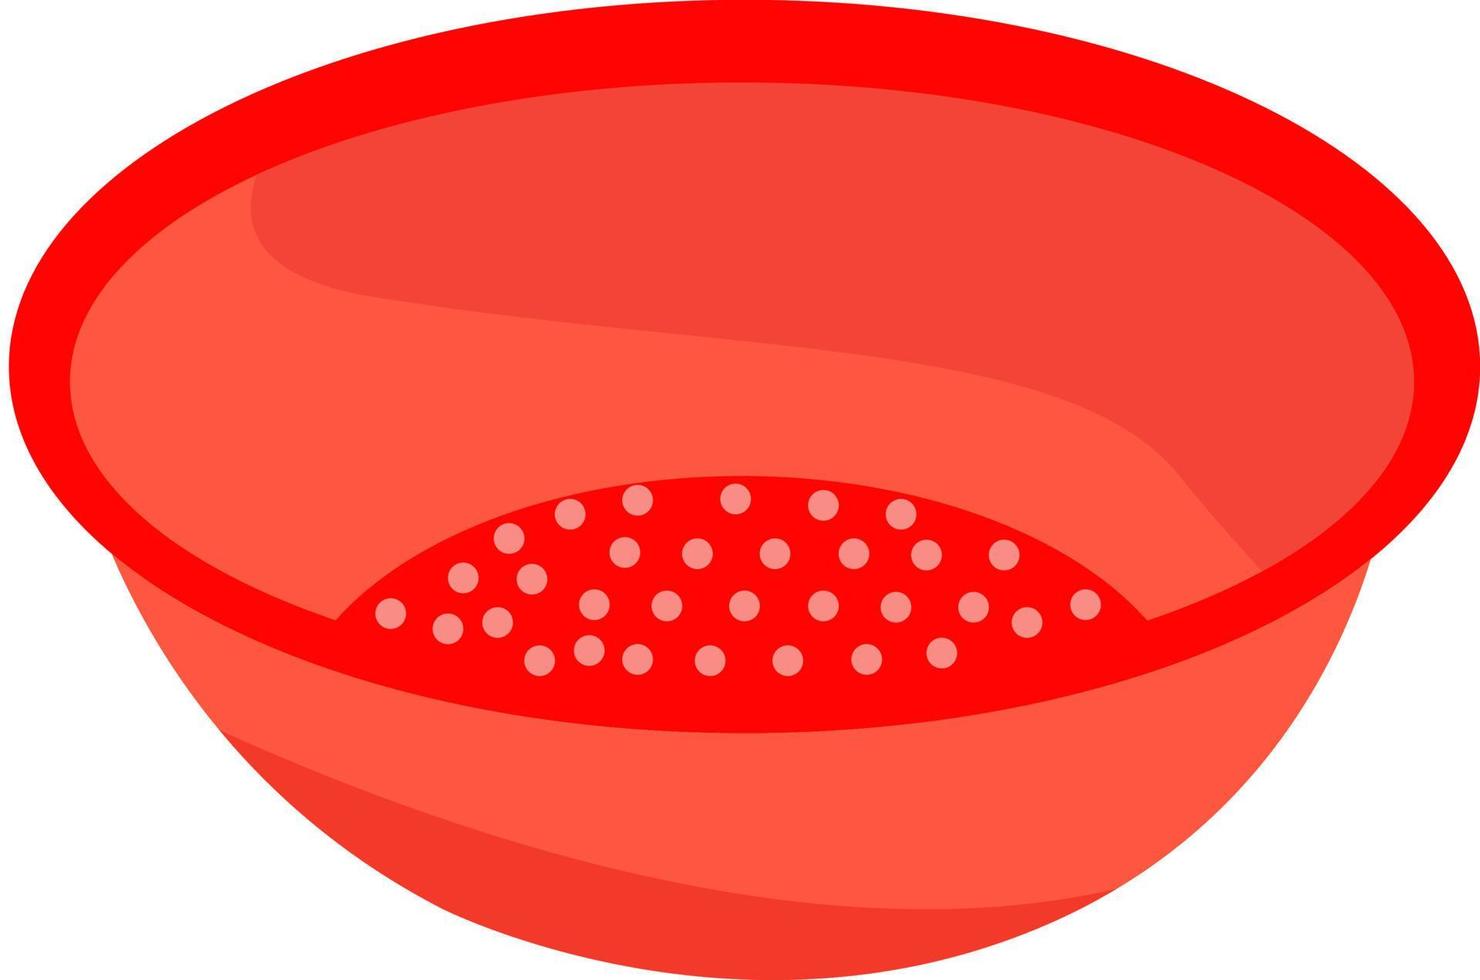 röd durkslag, illustration, vektor på vit bakgrund